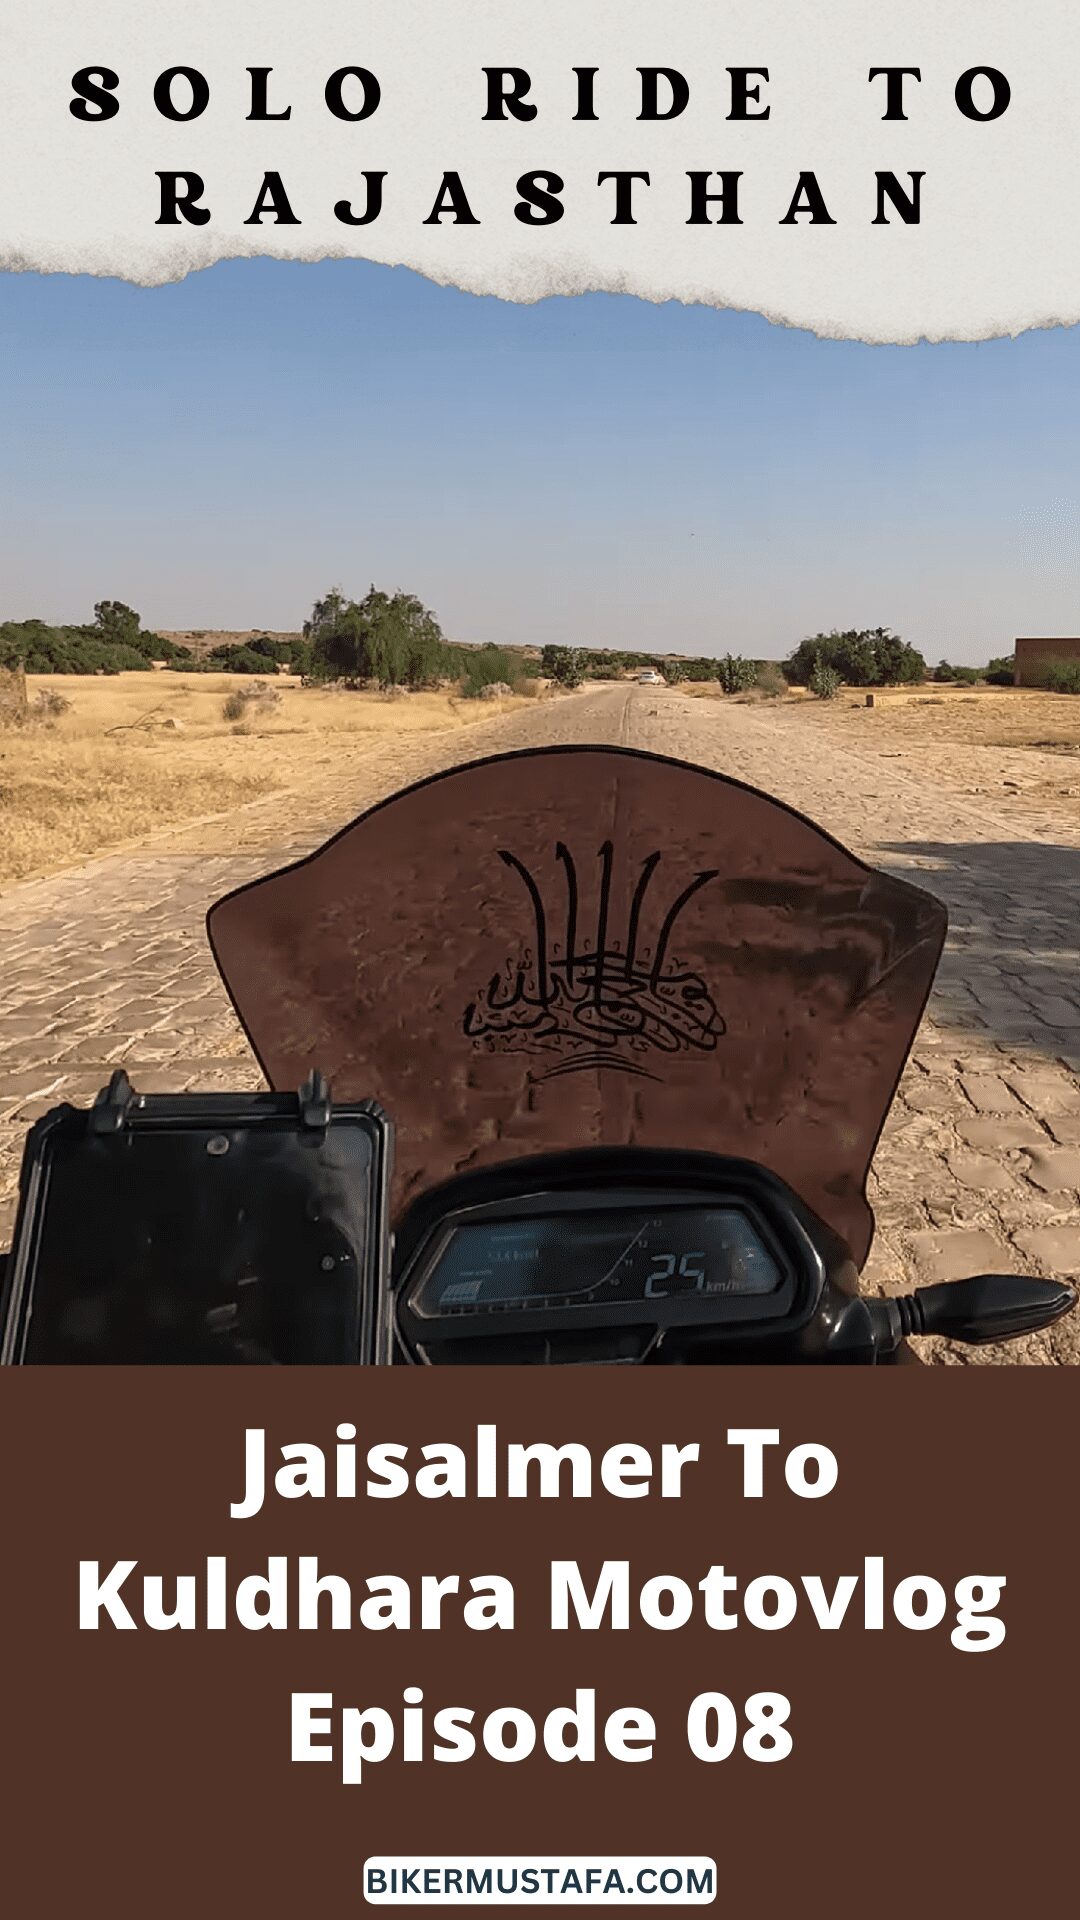 Rajasthan Ride Jaisalmer To Kuldhara Motovlog Episode 08